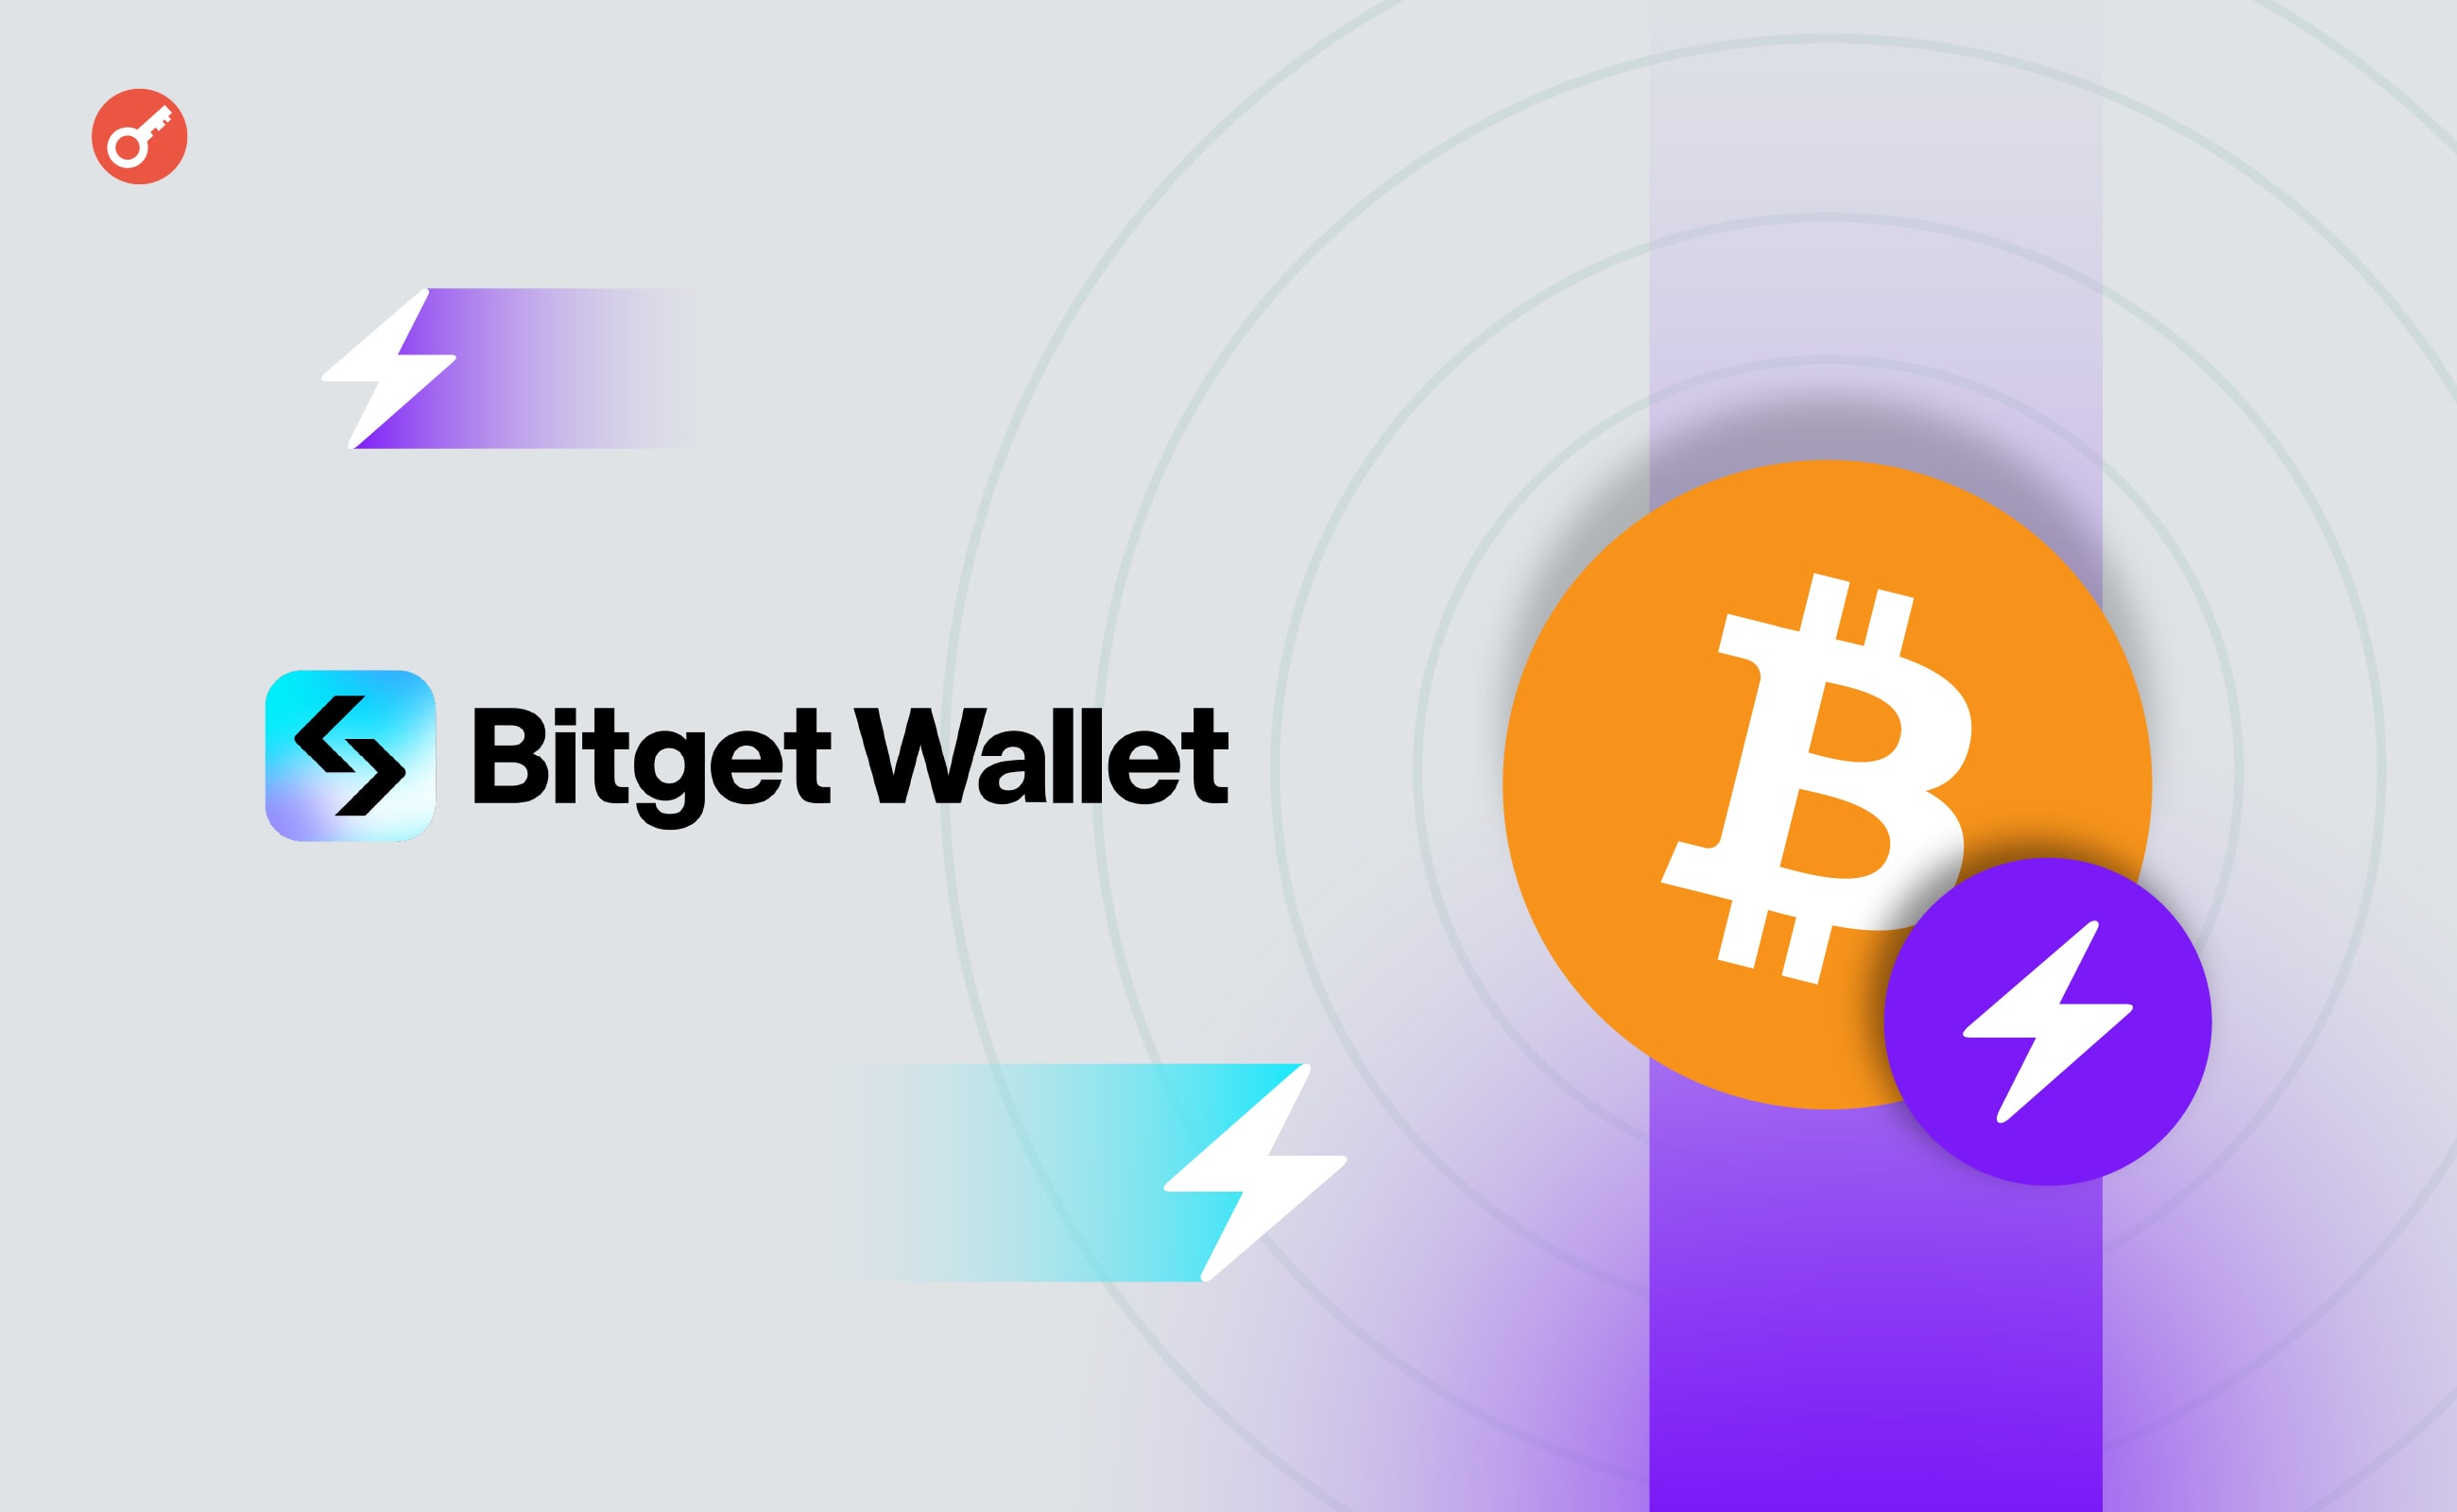 Bitget Wallet додав підтримку ARC-20 і Lightning Network. Головний колаж новини.